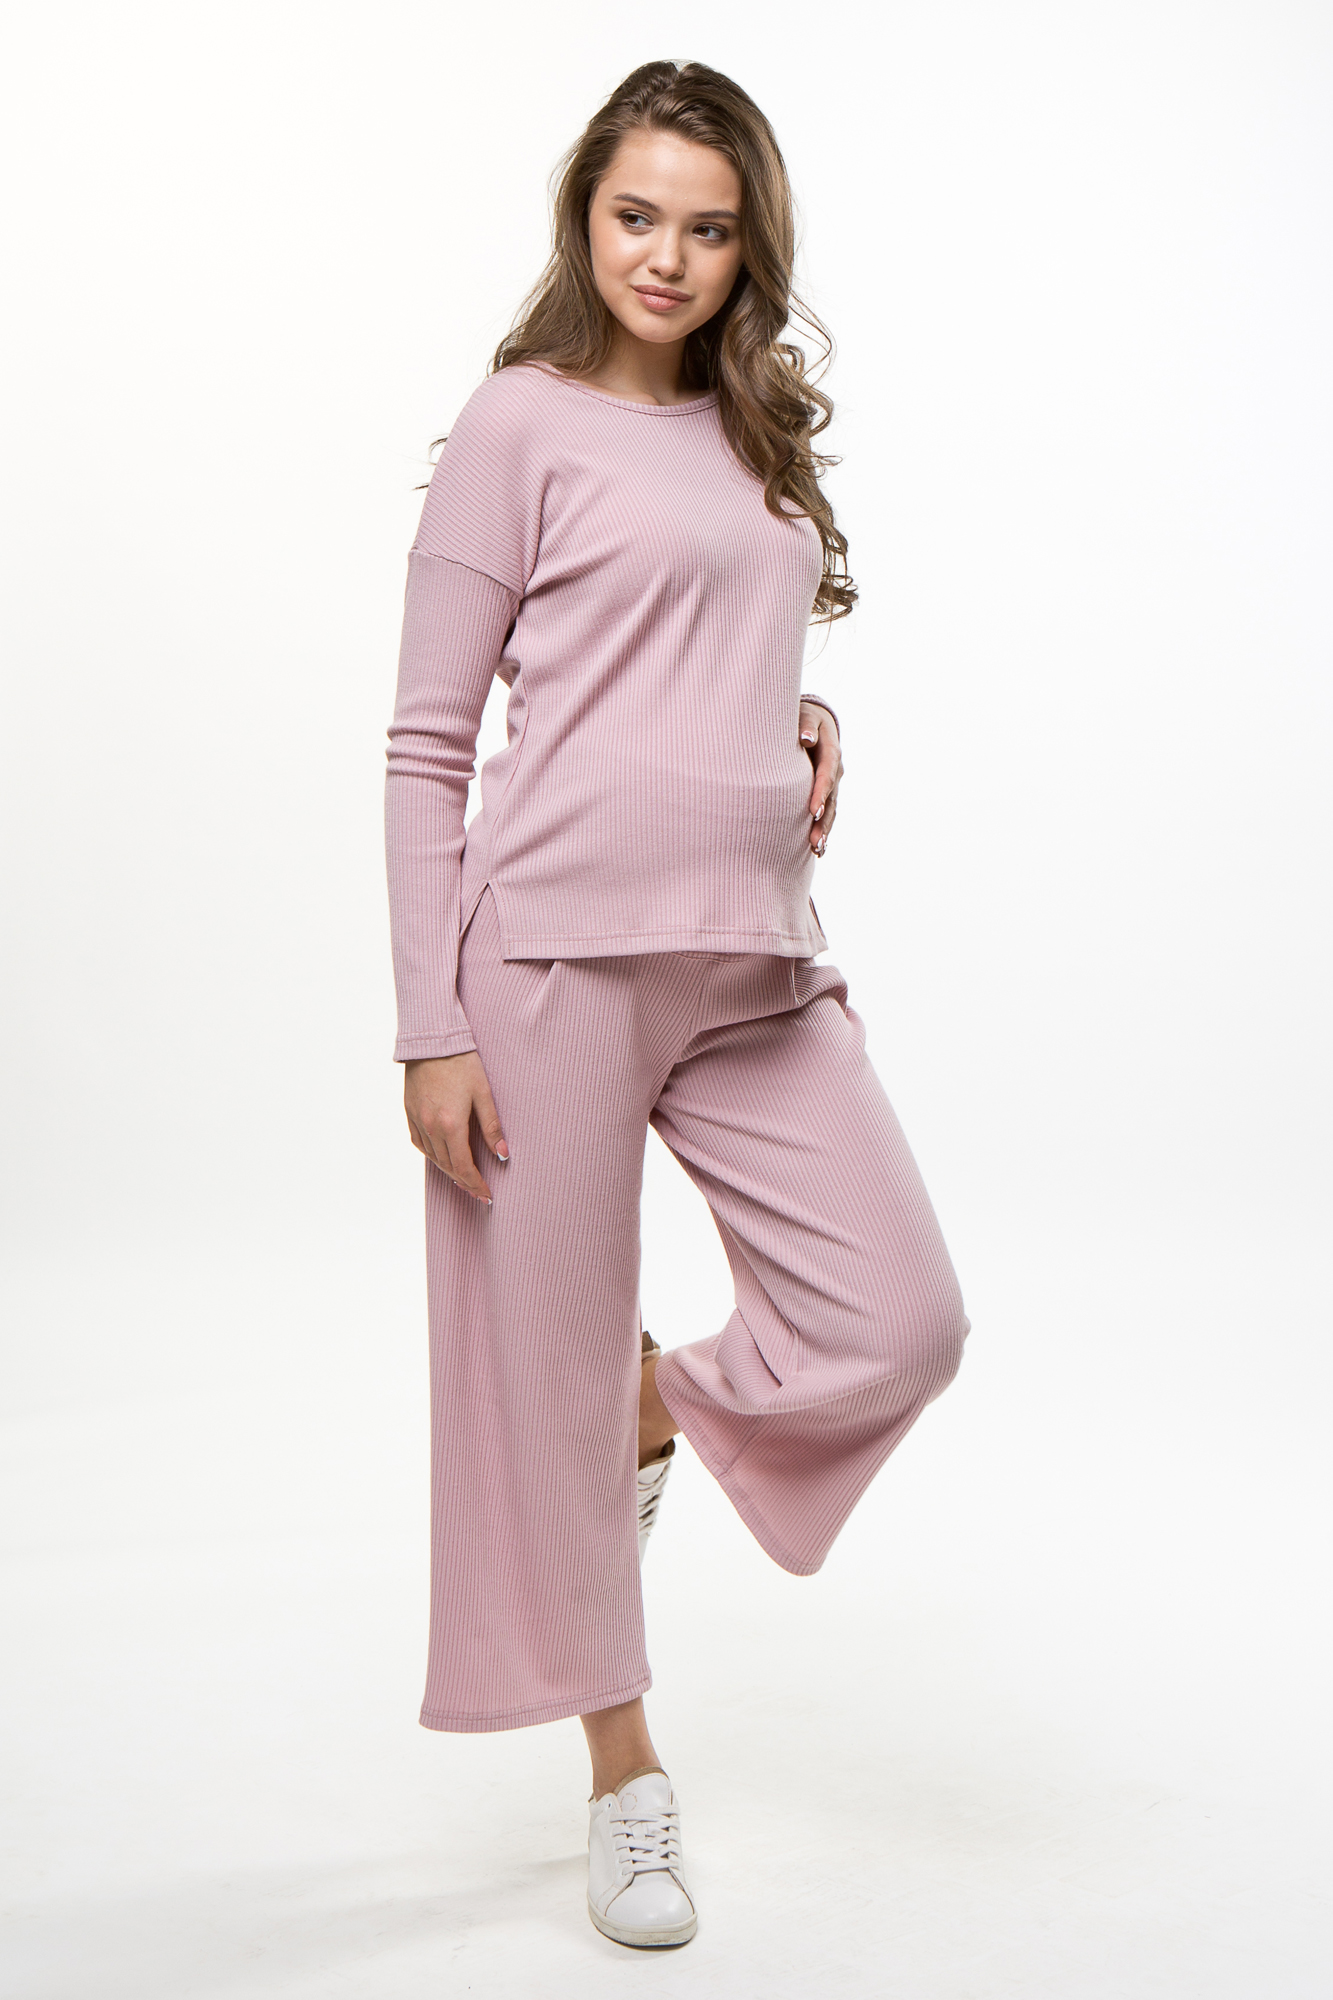 Костюм для беременных женский Magica bellezza 0184а розовый 54 RU